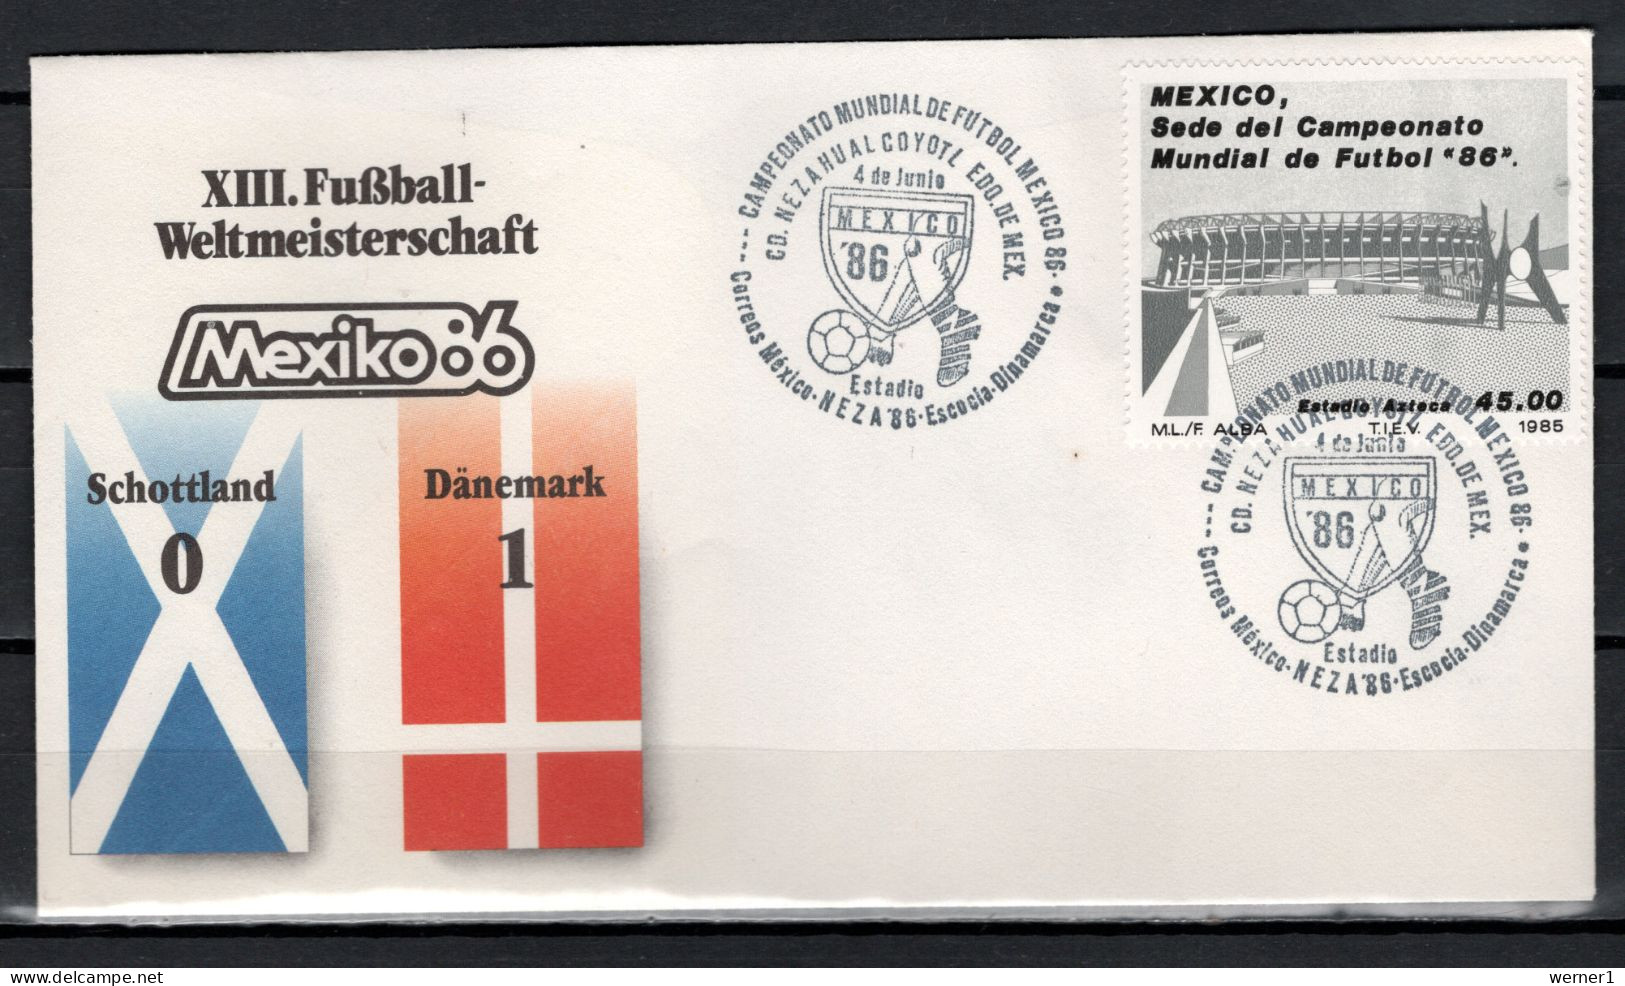 Mexico 1986 Football Soccer World Cup Commemorative Cover Match Scotland - Denmark 0 : 1 - 1986 – Mexico